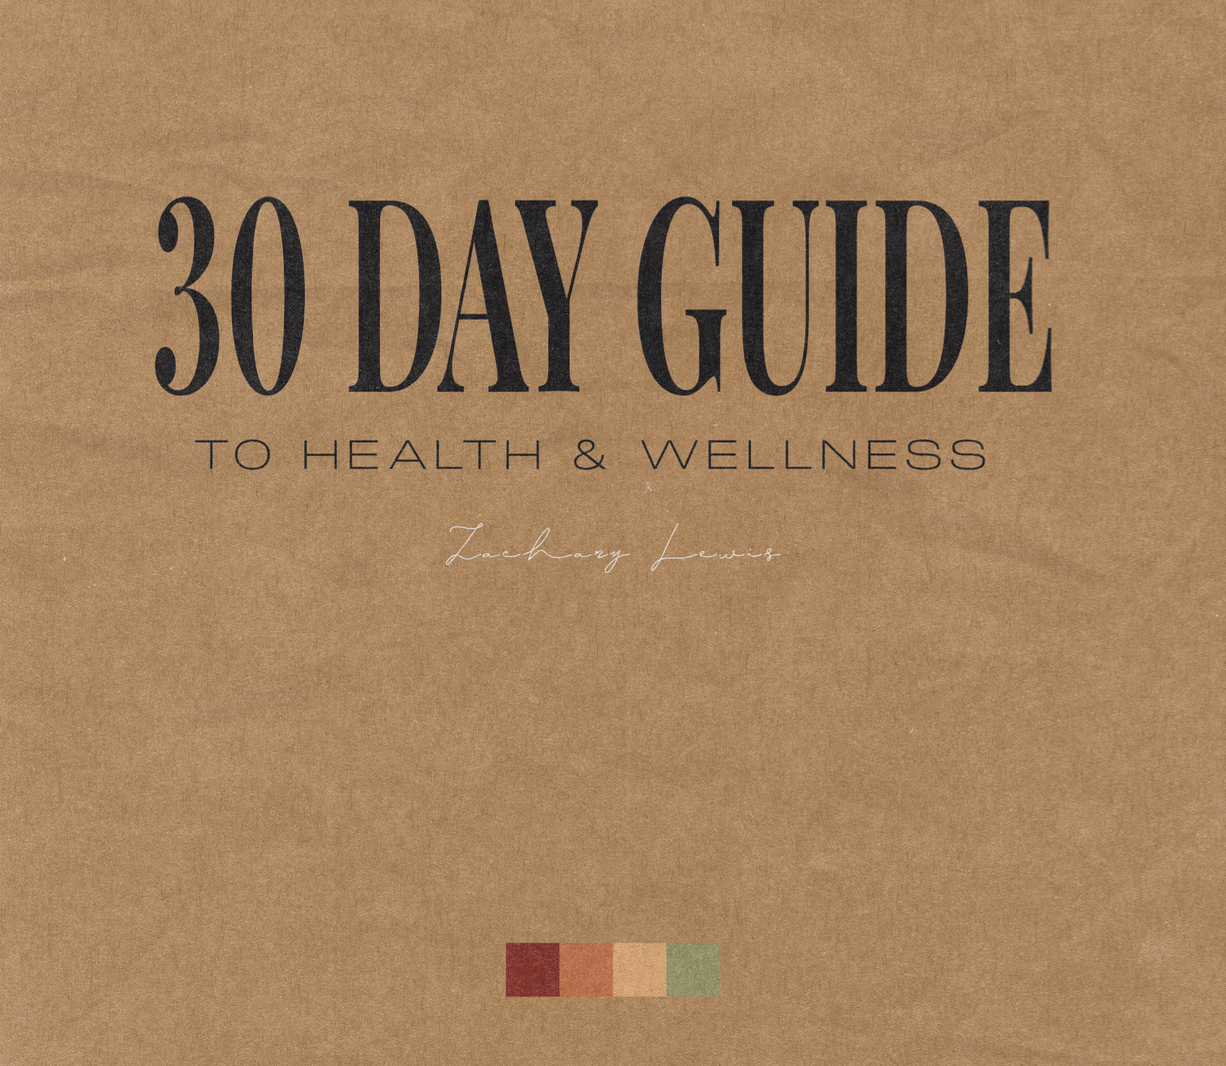 Health & Wellness Guide (Digital Copy)